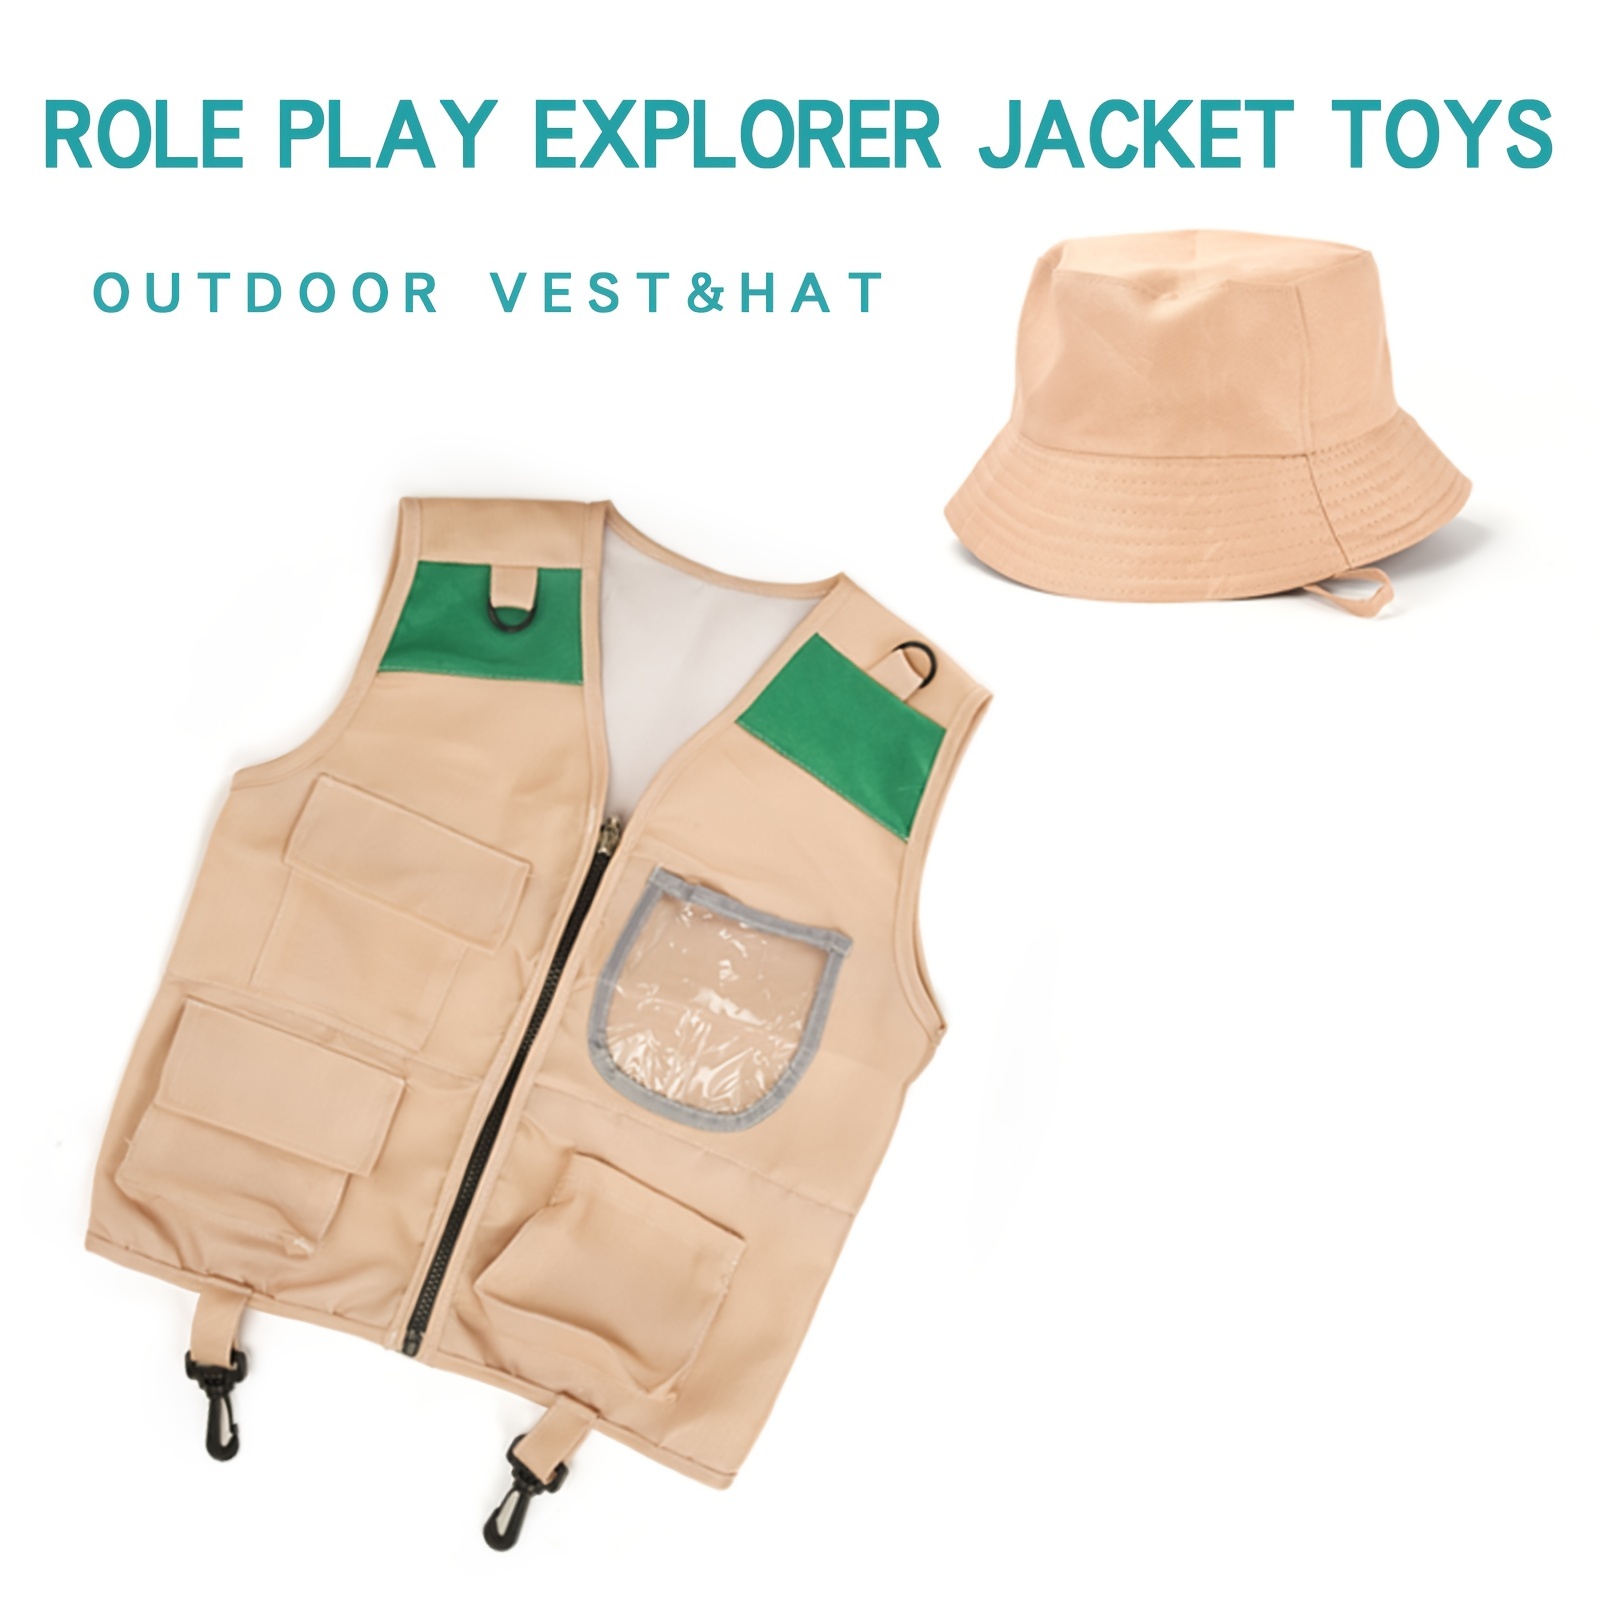 Disfraz de chaleco y sombrero de explorador para niños - chaleco